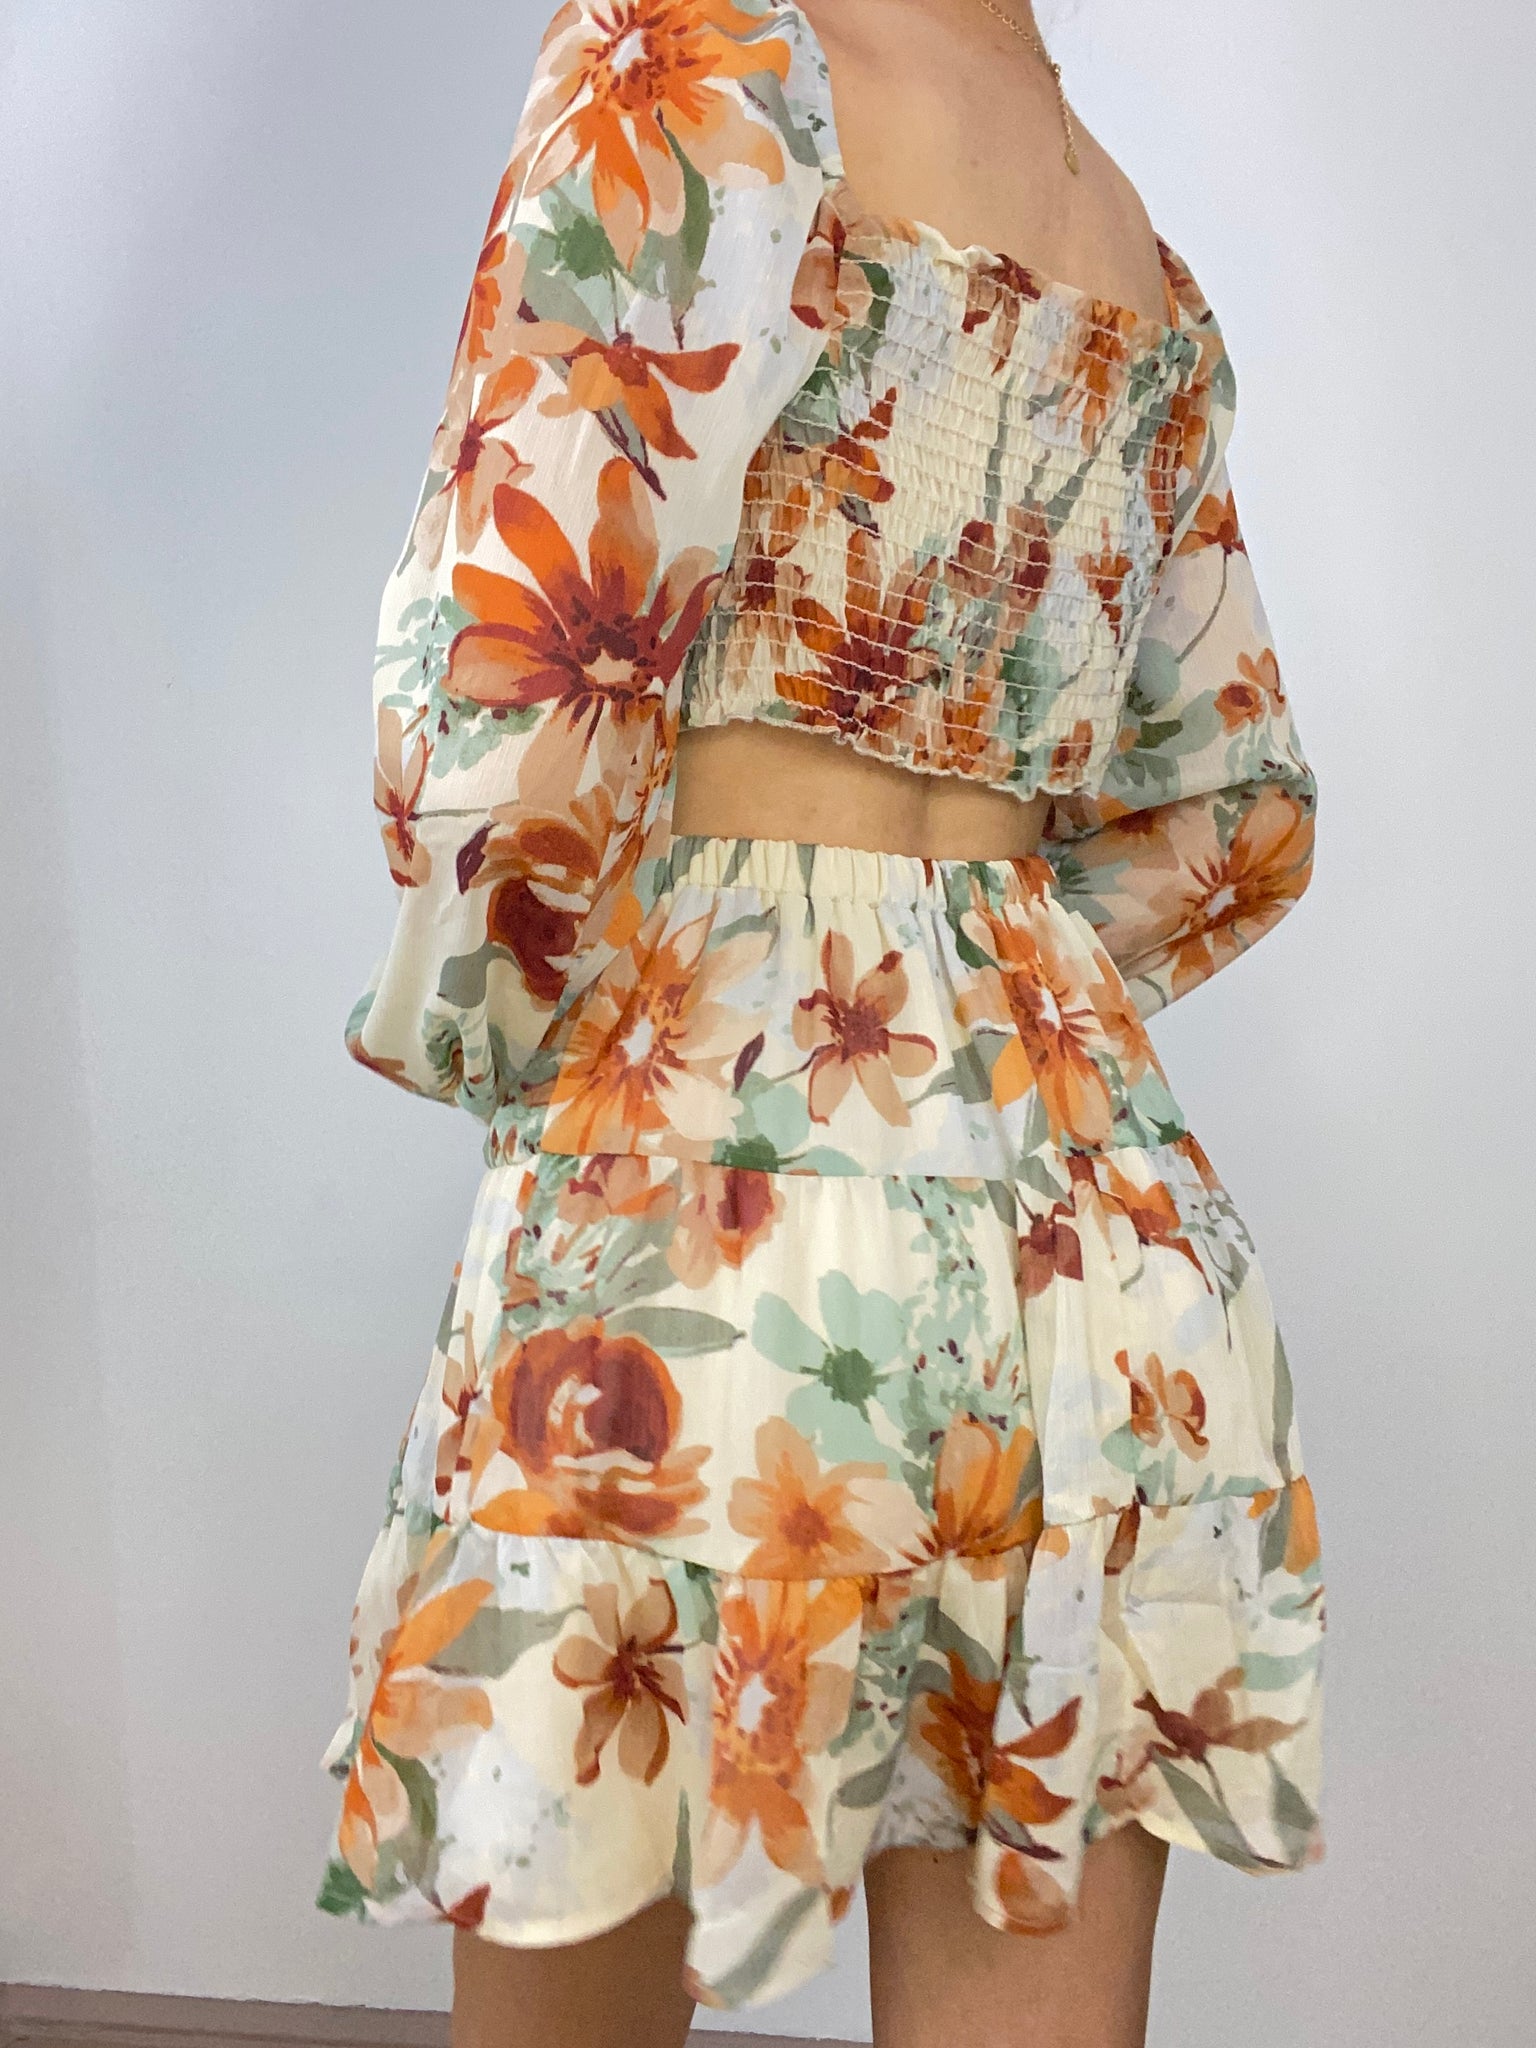 Maribella Floral Dress (Apricot)